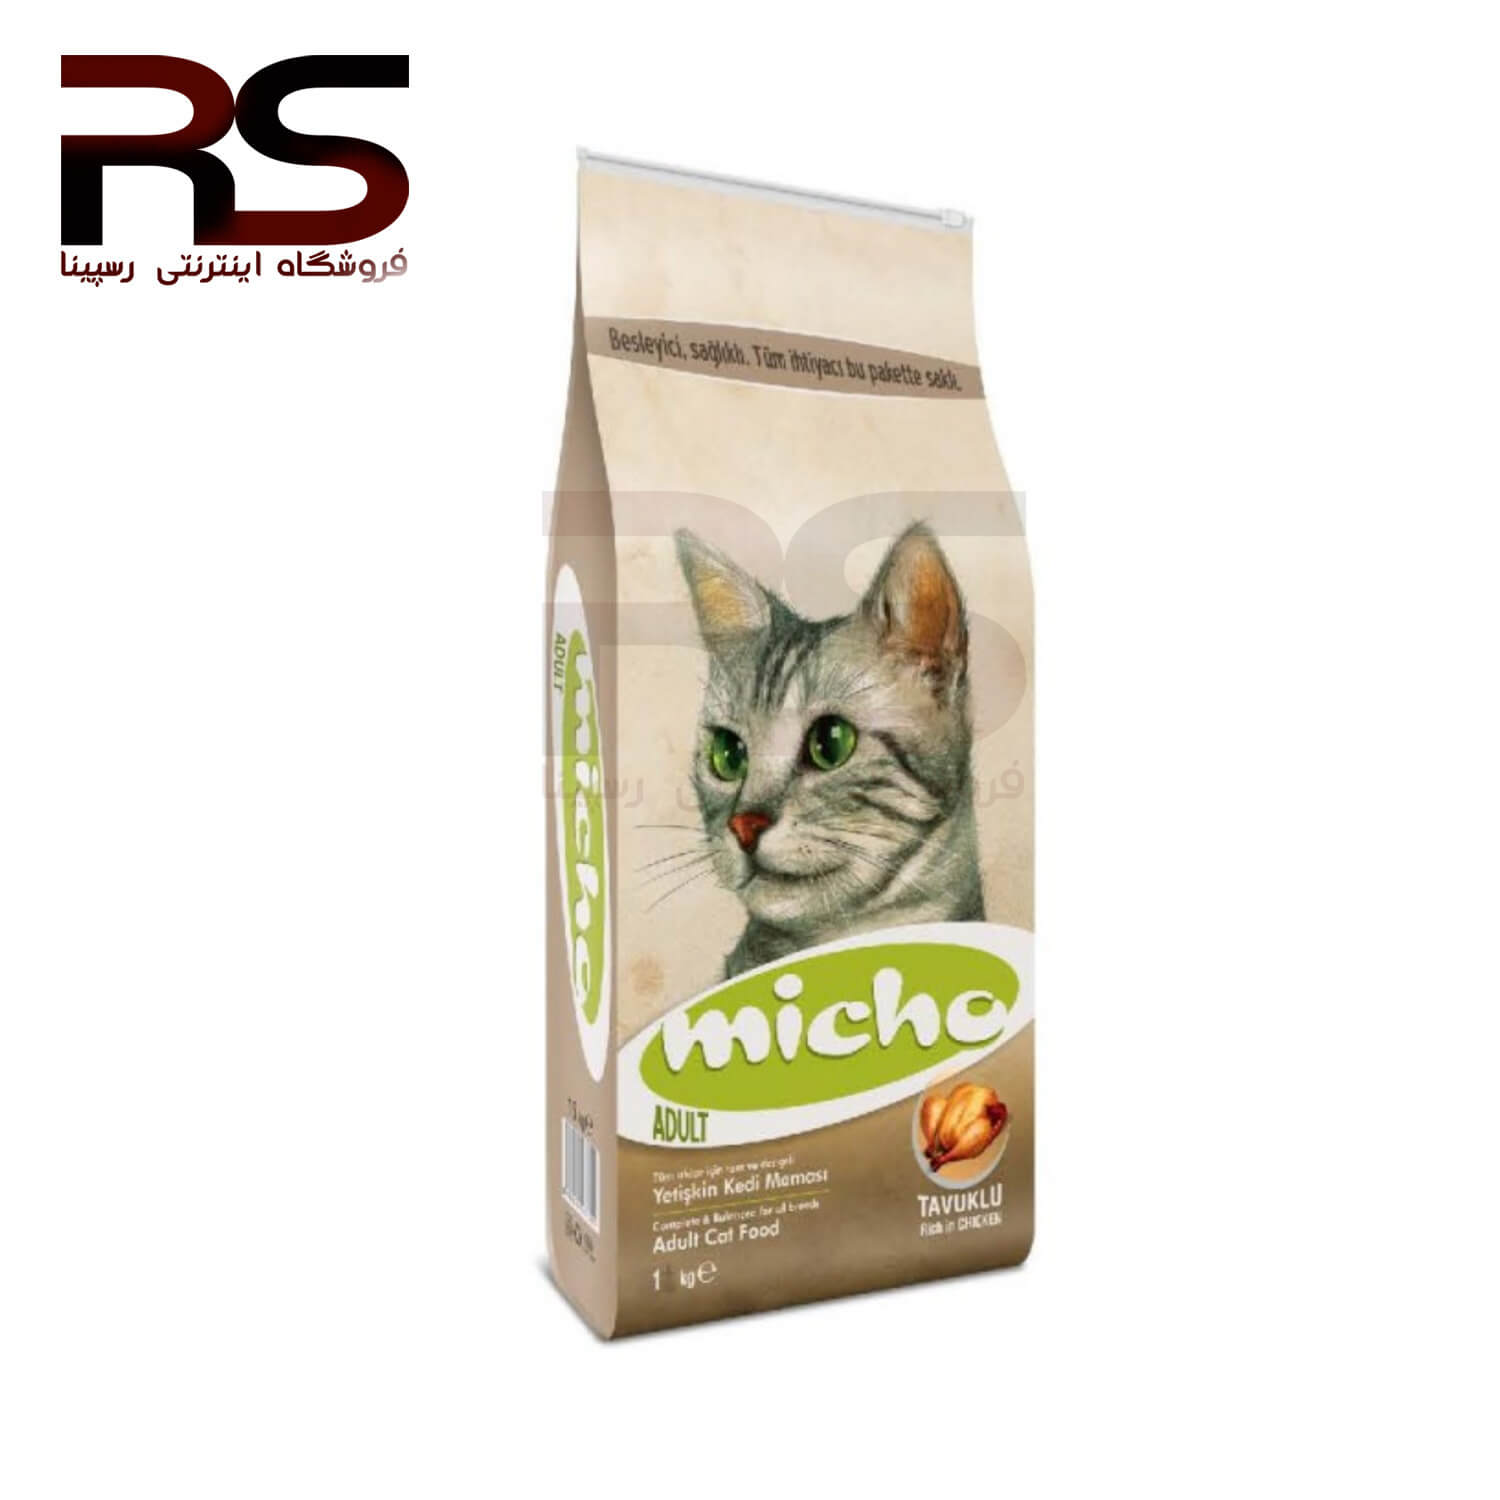 غذای خشک میچو Micho مخصوص گربه بالغ